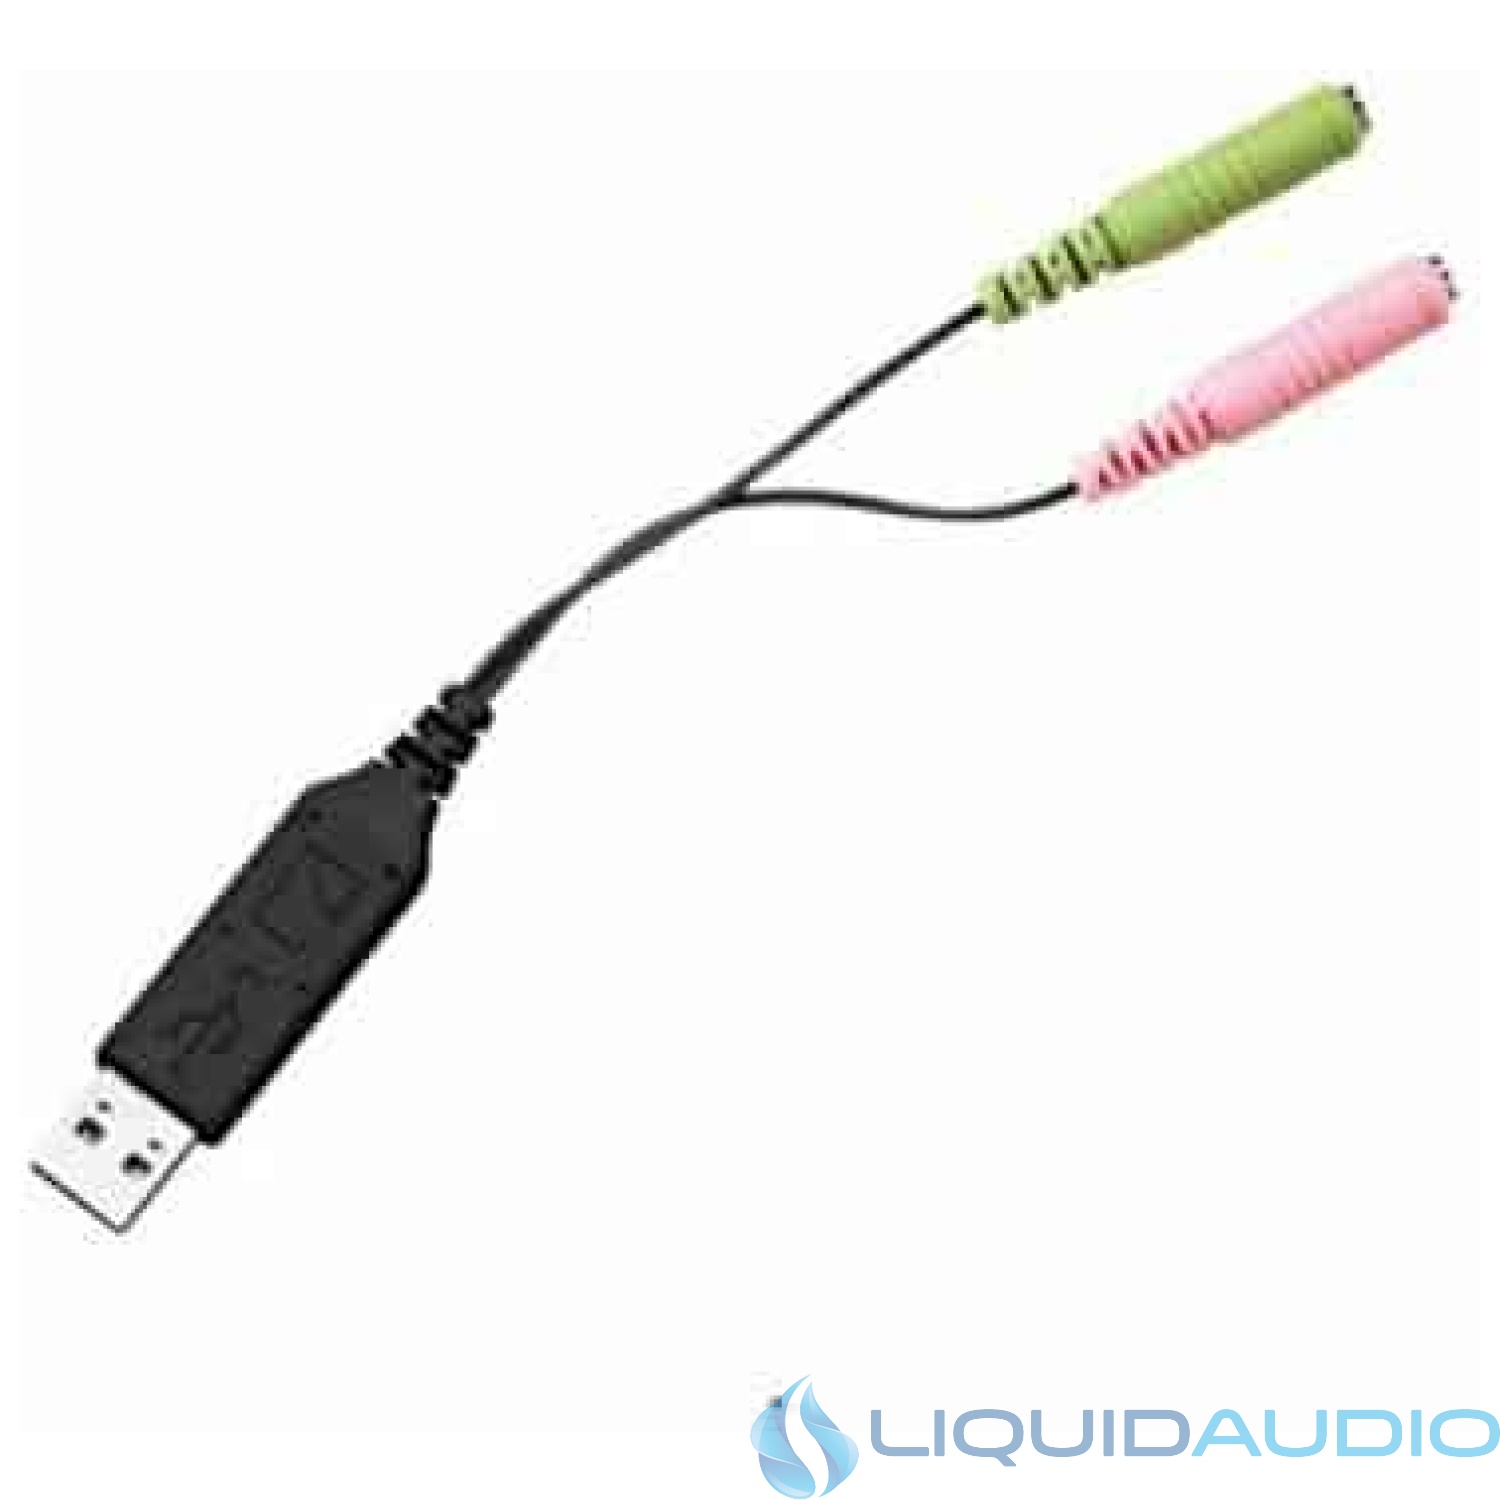 Sennheiser UUSB 1 - Sound card - USB